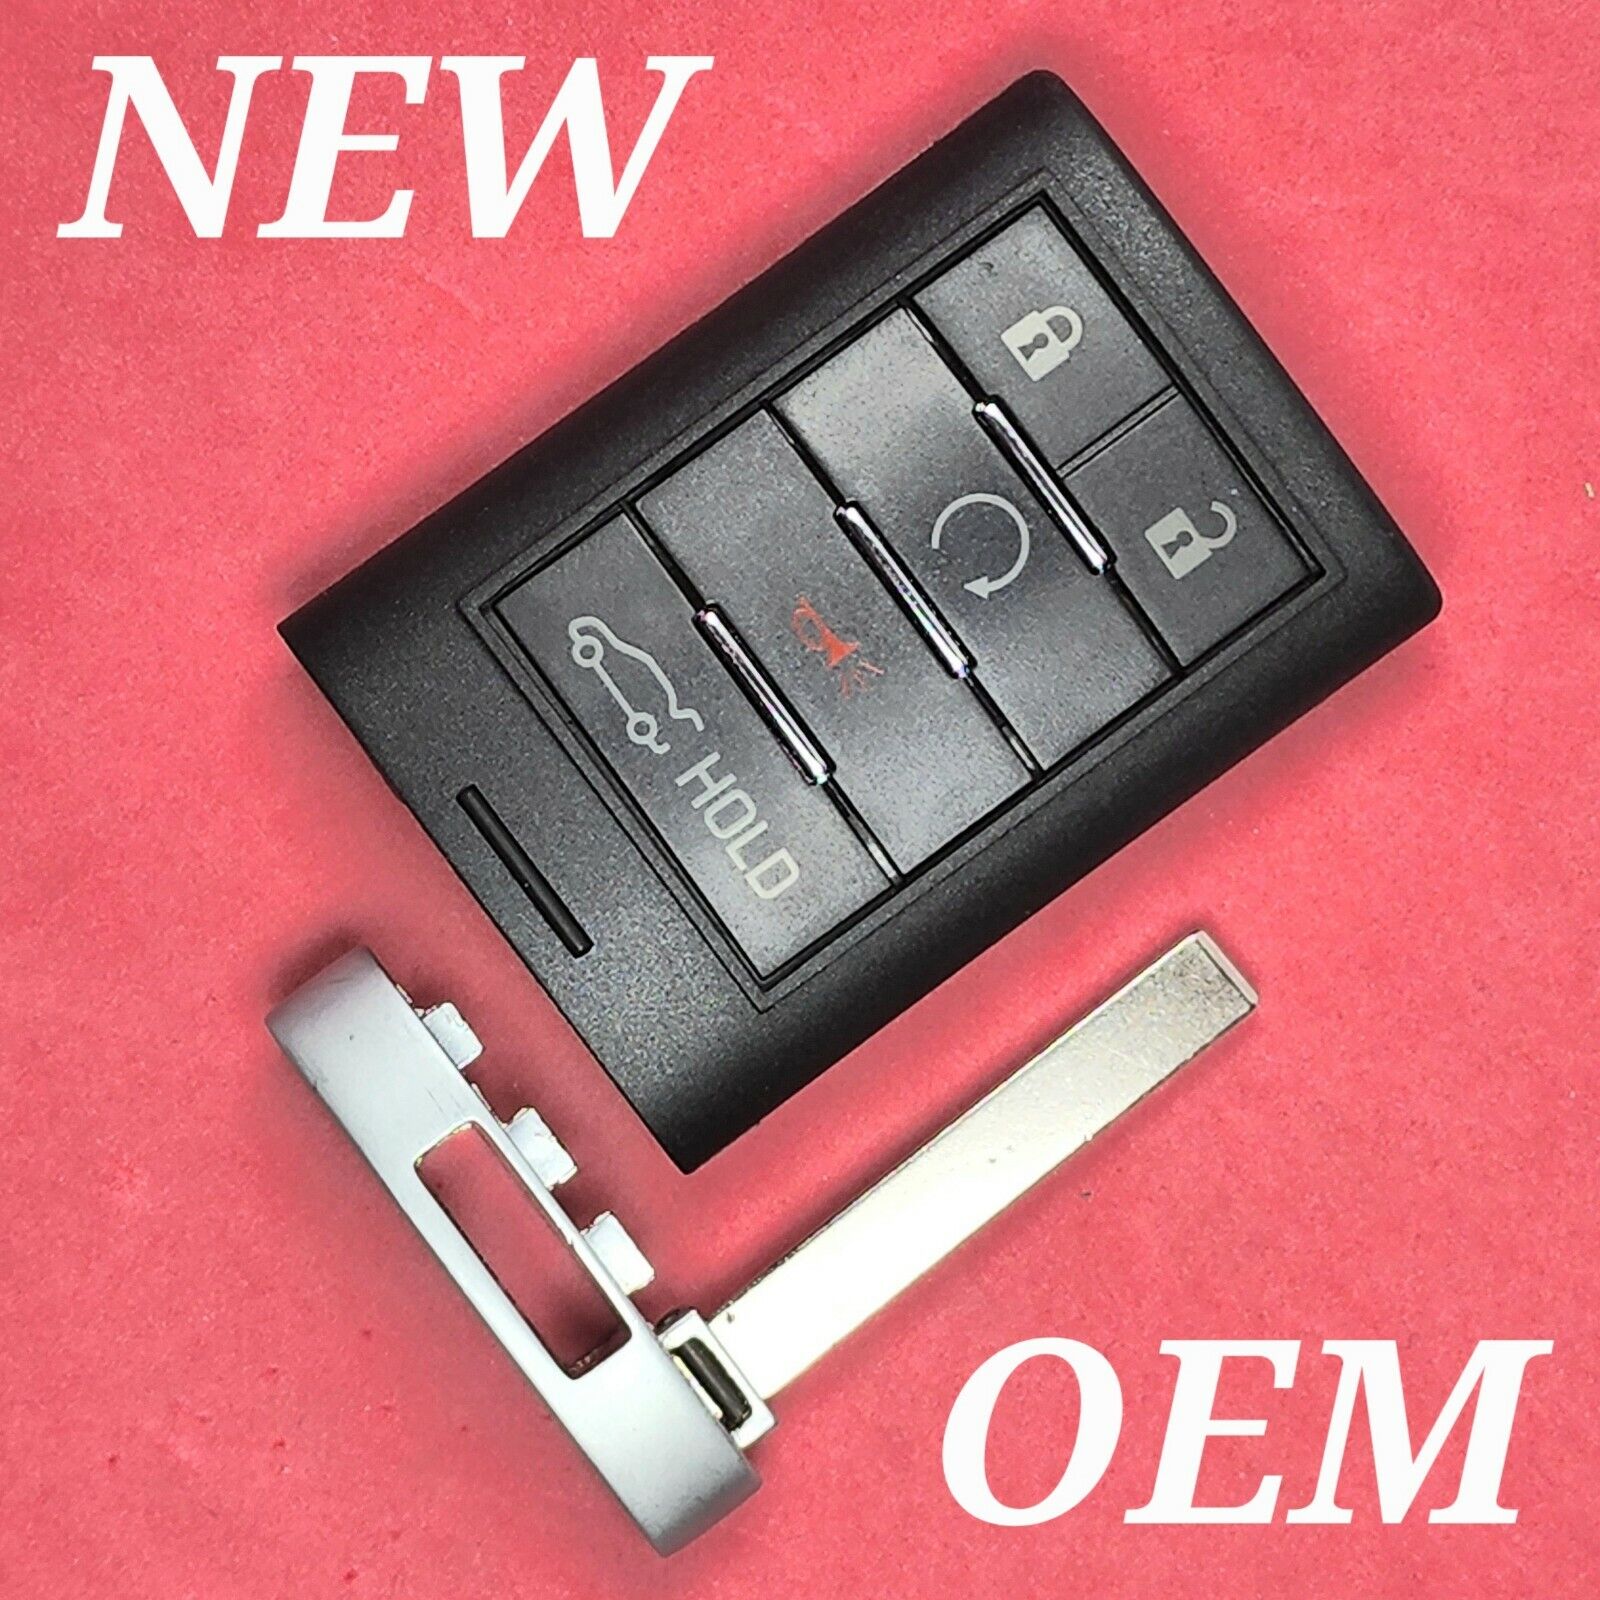 New OEM Cadillac ATS XTS ELR Smart Key 5B Trunk / Remote Start - NBG009768T